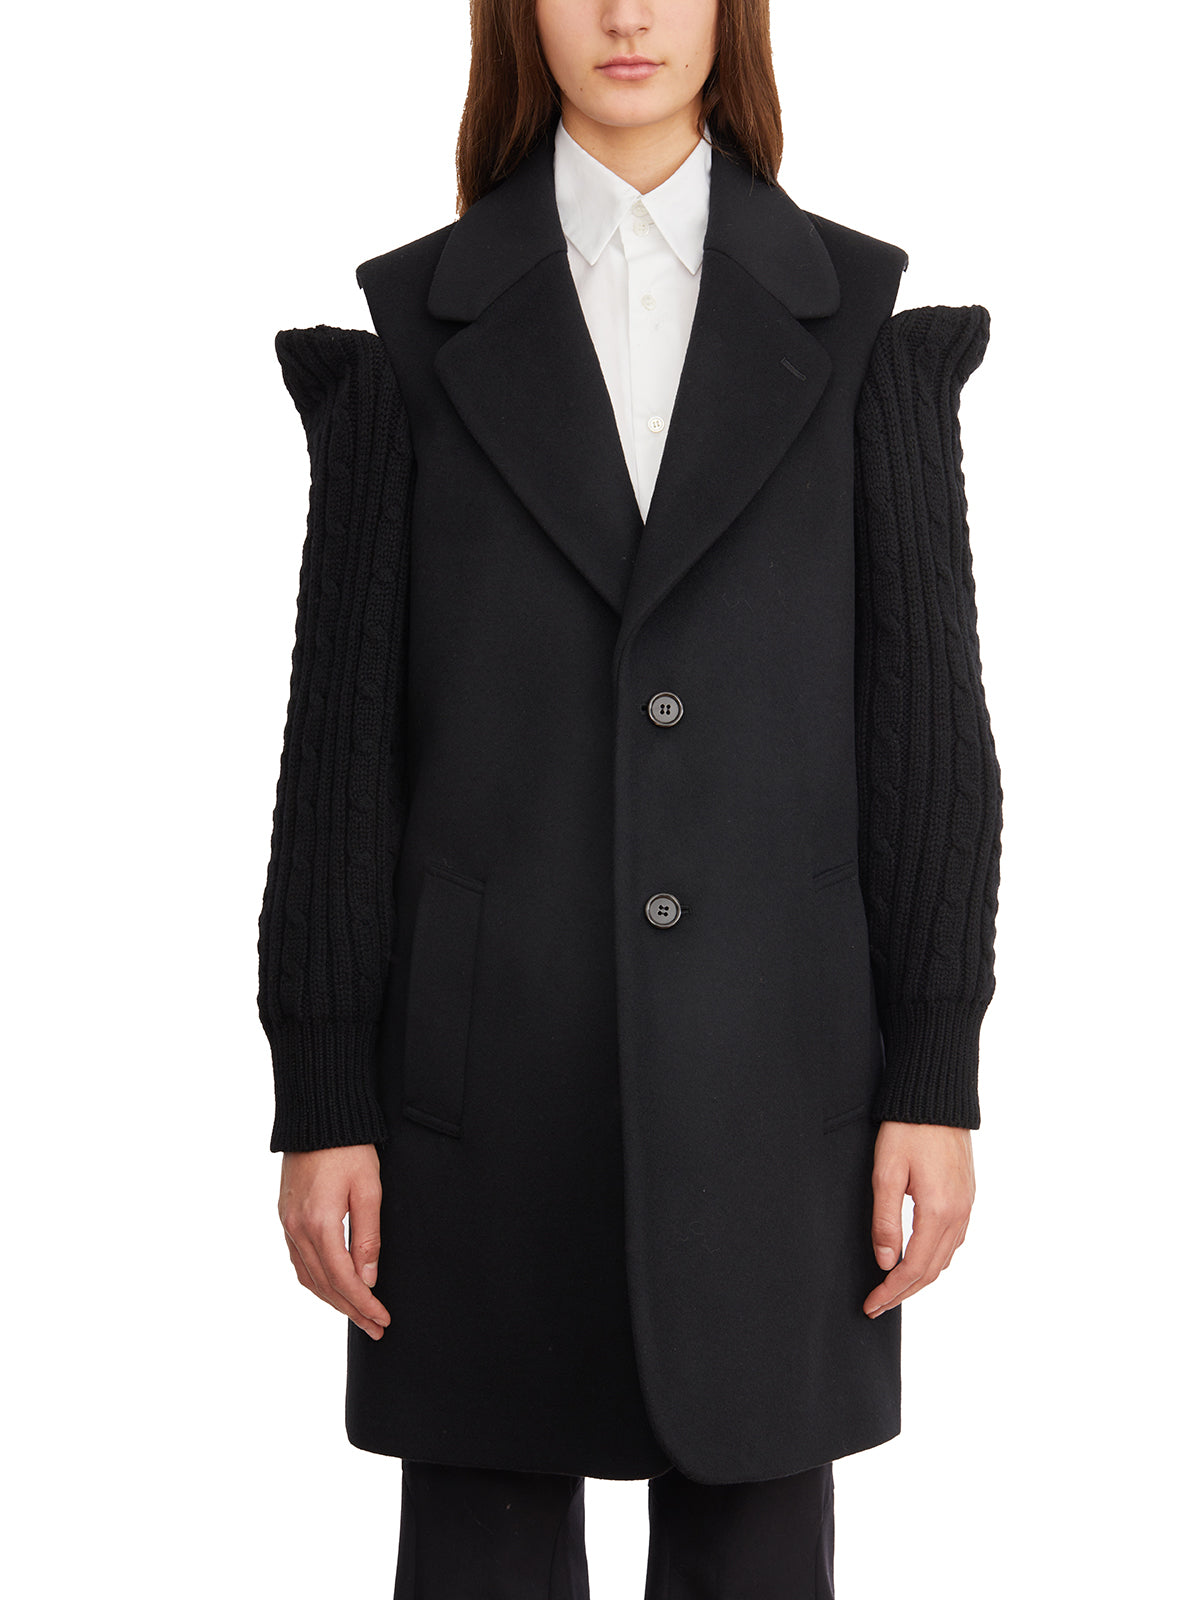 Áo khoác len đen cho nữ - Tay áo mở vai túi trước nút